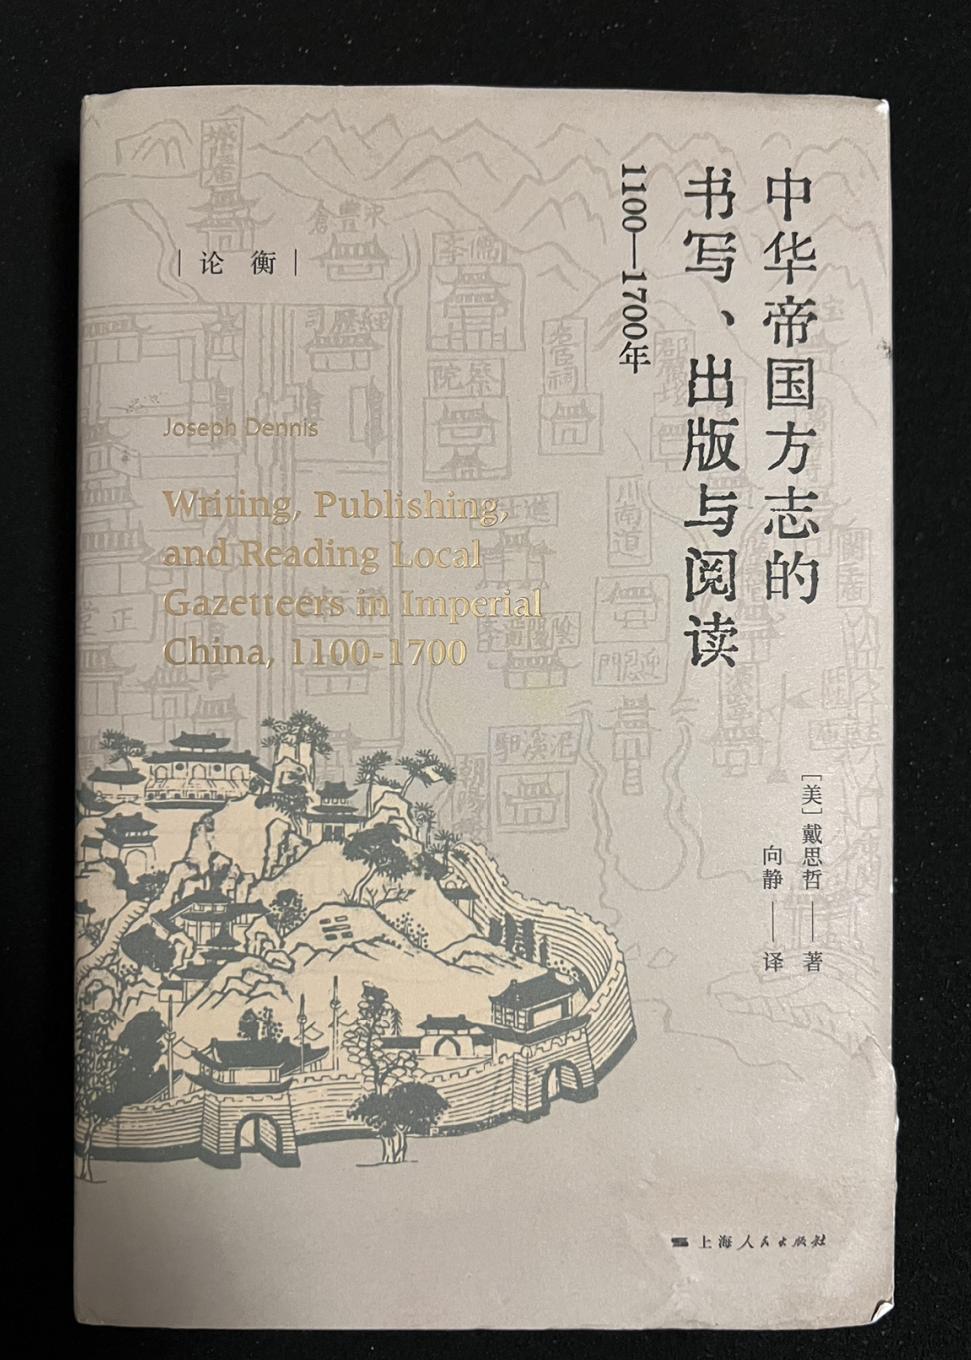 夜书话｜“活的文献”：《中华帝国方志的书写、出版与阅读：1100—1700》